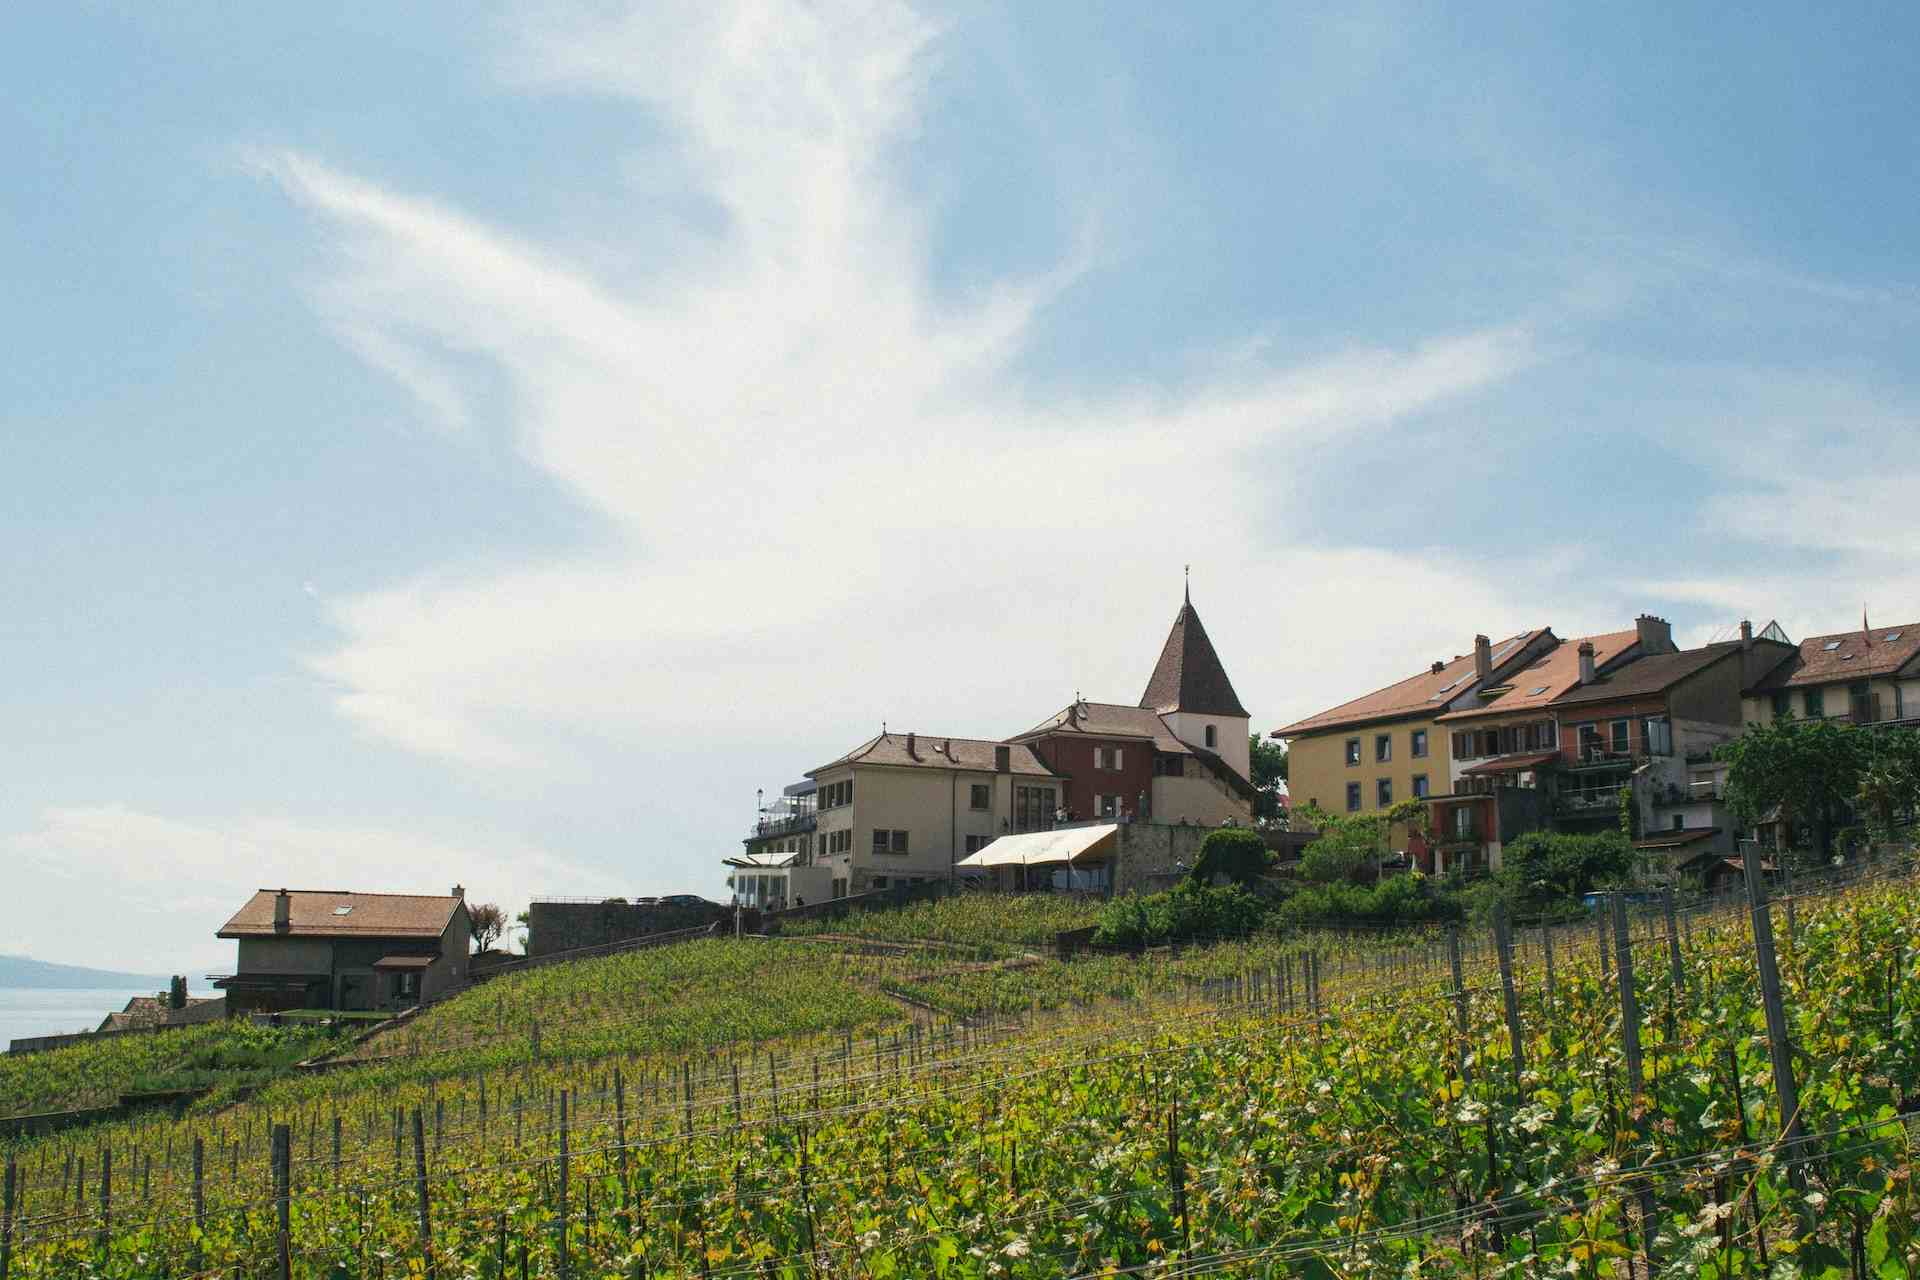 Domaine de la Grange de Montricher, producer in Le Mont-sur-Lausanne canton of Vaud in Switzerland